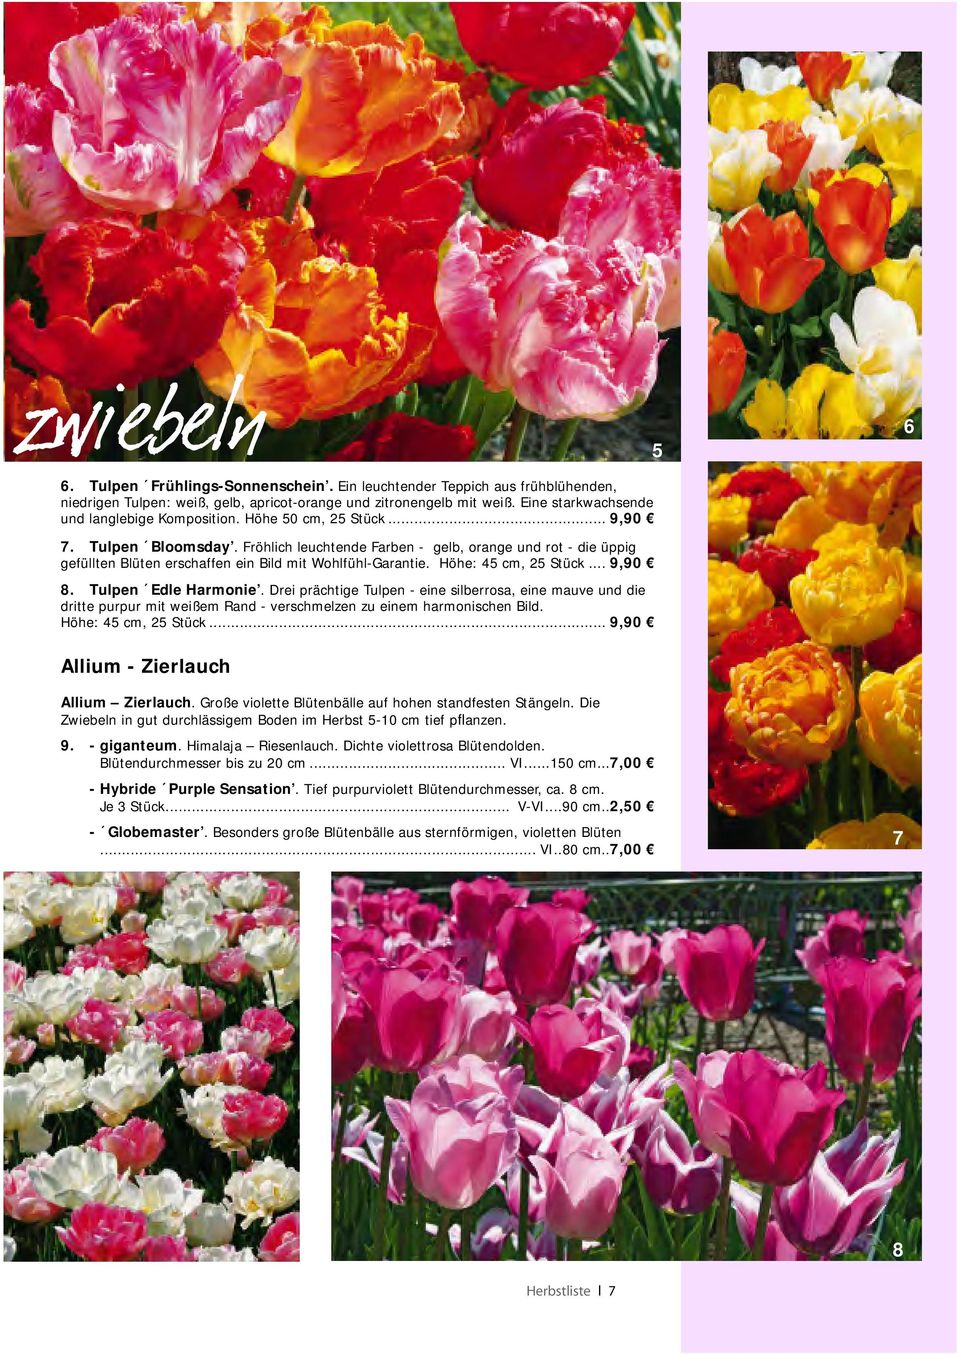 .. 9,90 8. Tulpen Edle Harmonie. Drei prächtige Tulpen - eine silberrosa, eine mauve und die dritte purpur mit weißem Rand - verschmelzen zu einem harmonischen Bild. Höhe: 45 cm, 25 Stück.